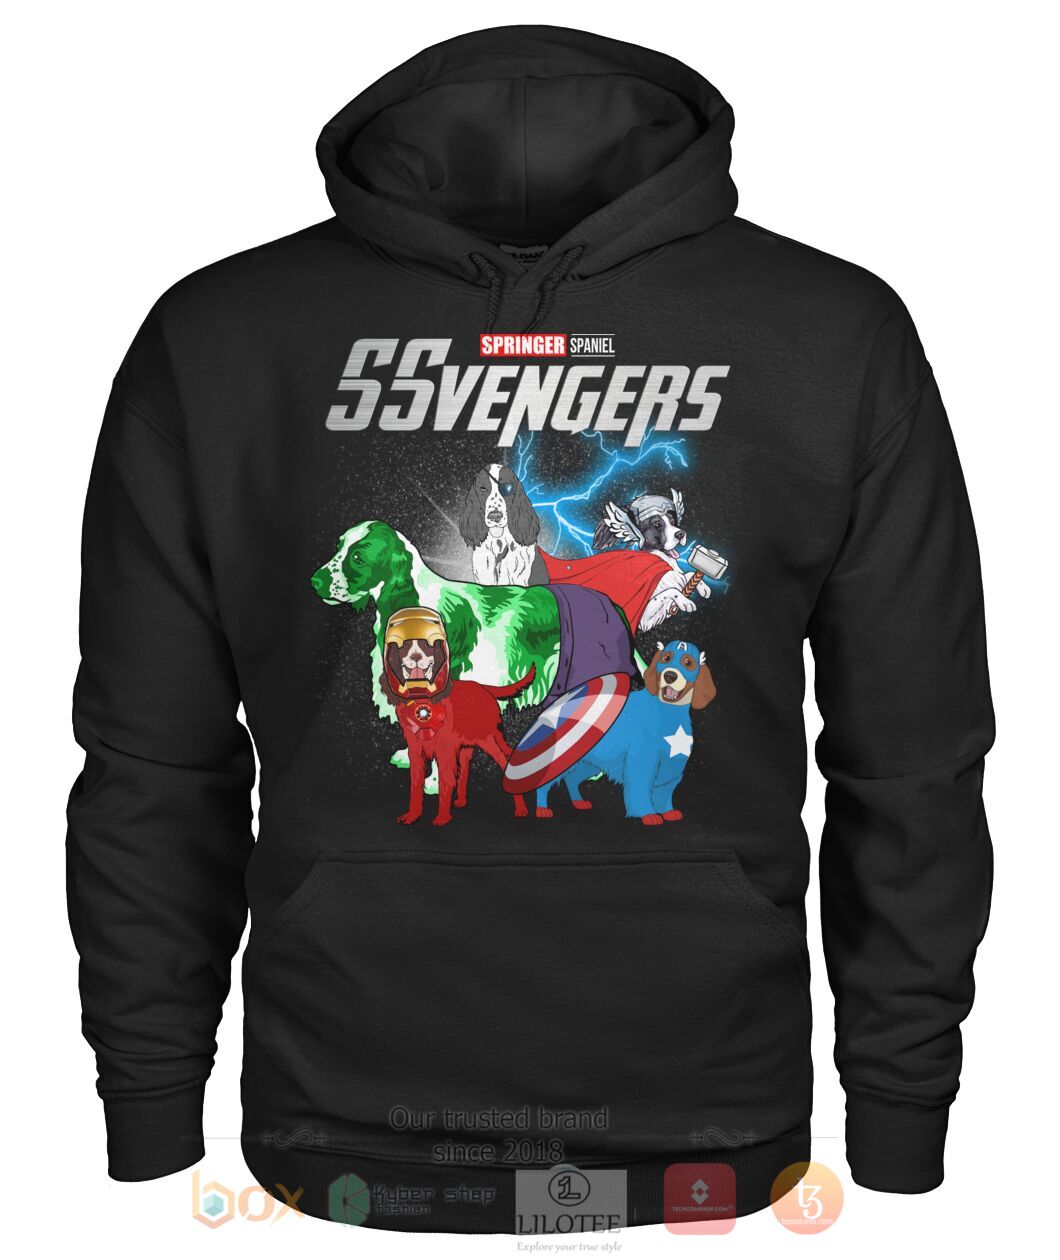 Springer spaniel Ssvengers 3D Hoodie Shirt 1